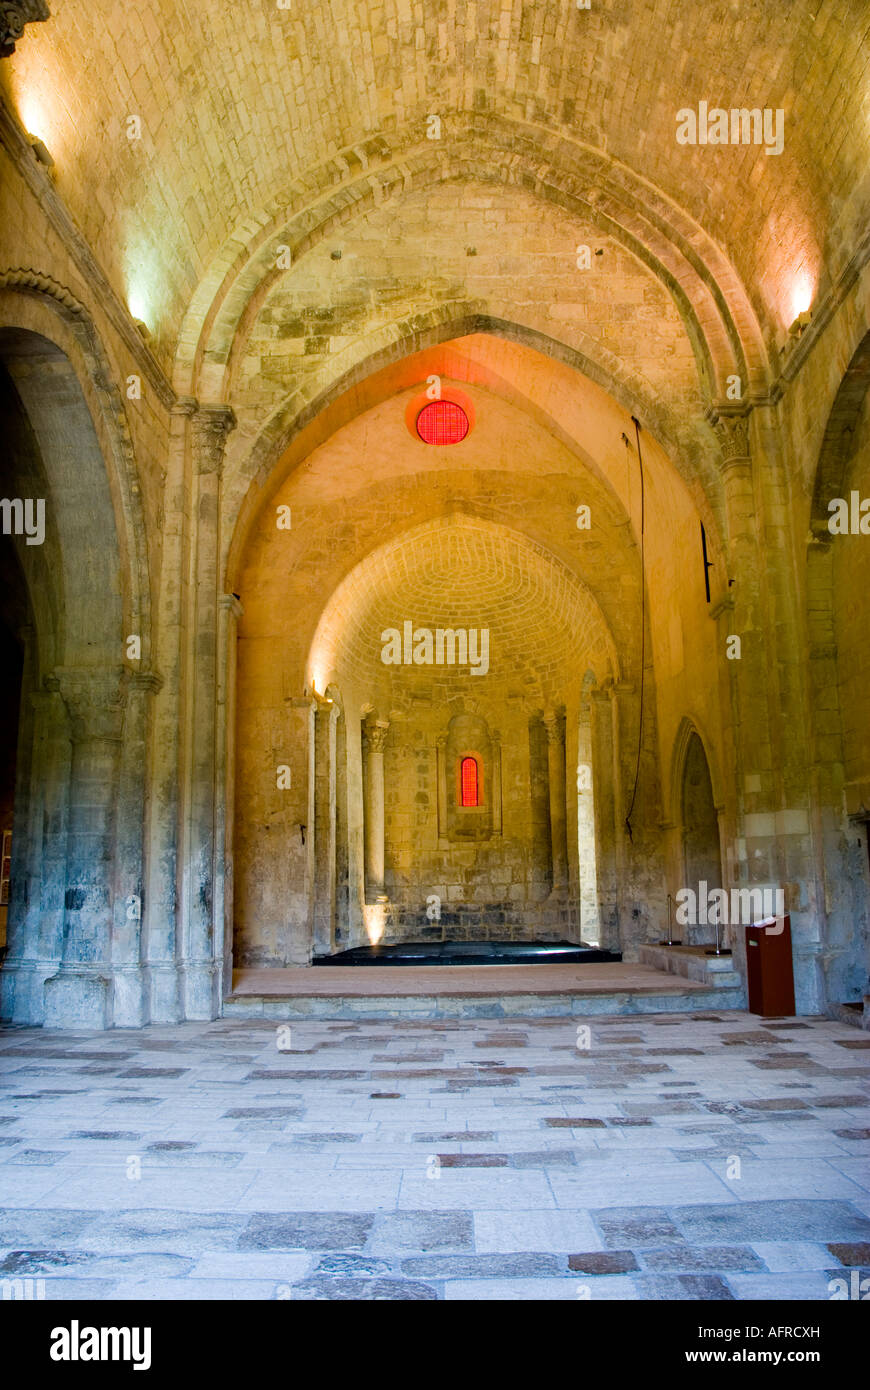 Salagon Abbazia, Provenza, Francia meridionale Foto Stock